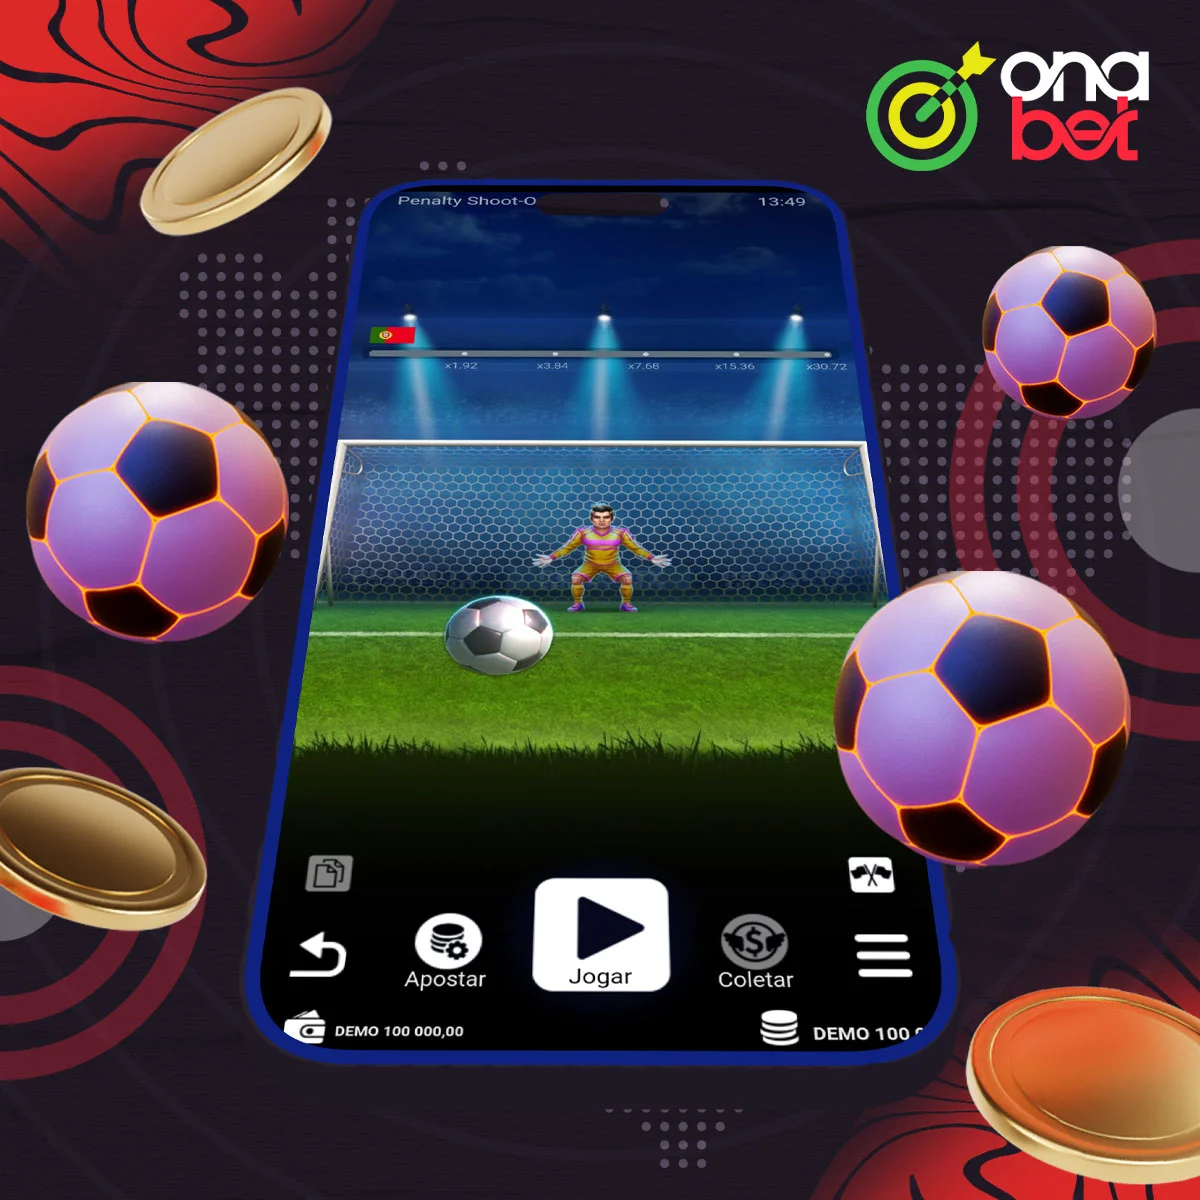 Jogar o jogo de pênaltis no aplicativo Onabet